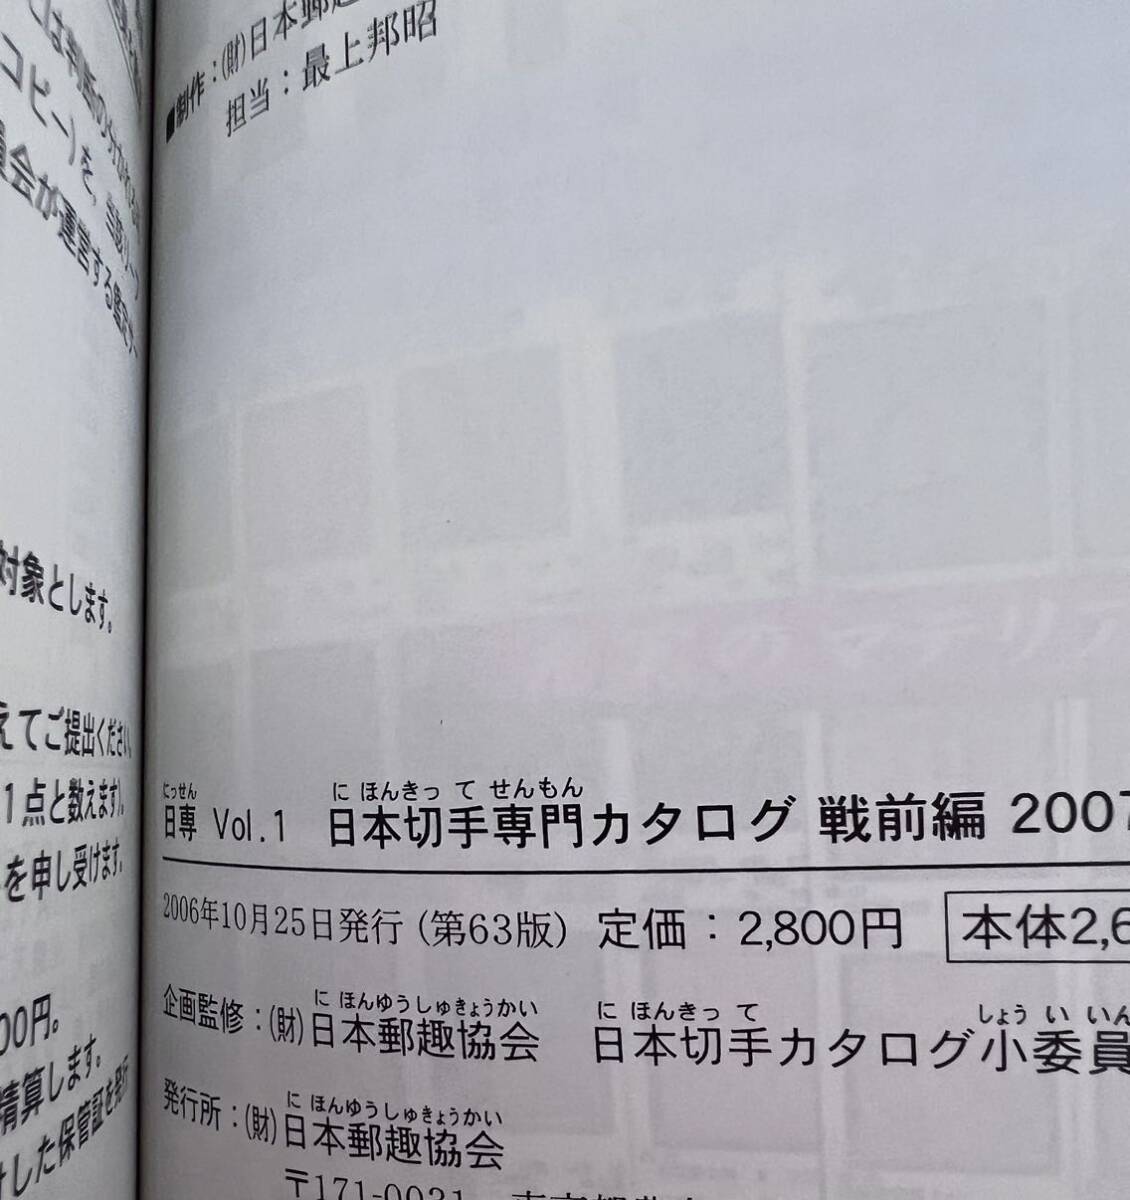 [ прекрасный книга@] Япония марка специализация каталог битва передний сборник vol.1 2007 обычная цена 2,800 иен Япония .. ассоциация .. сервис фирма 2006 год выпуск 